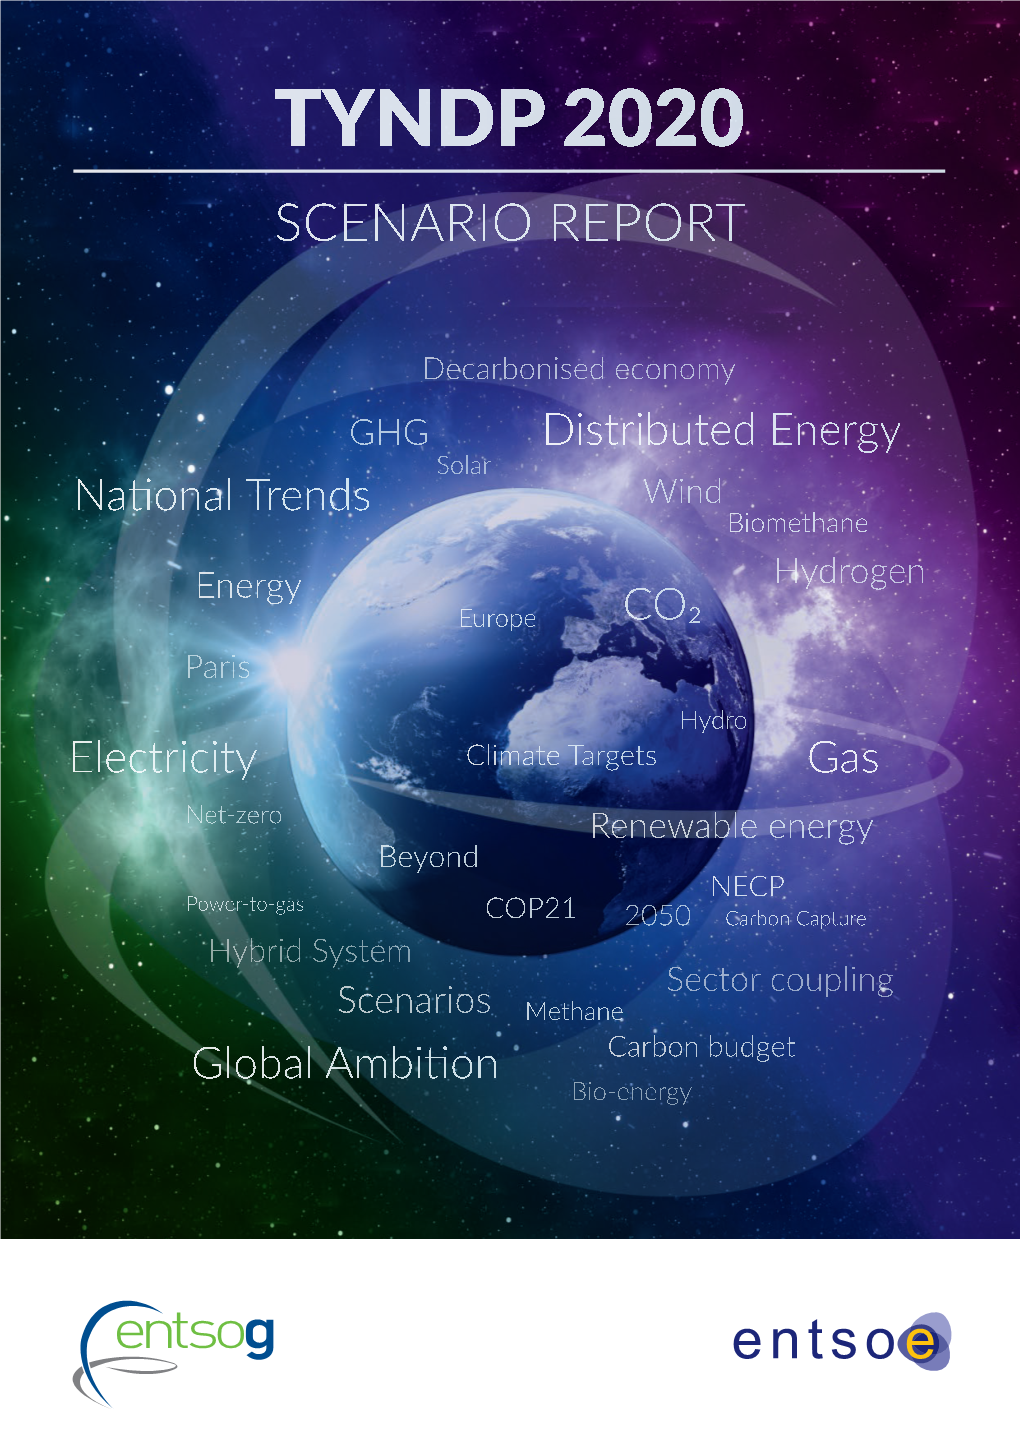 Entsos' TYNDP 2020 Scenario Report